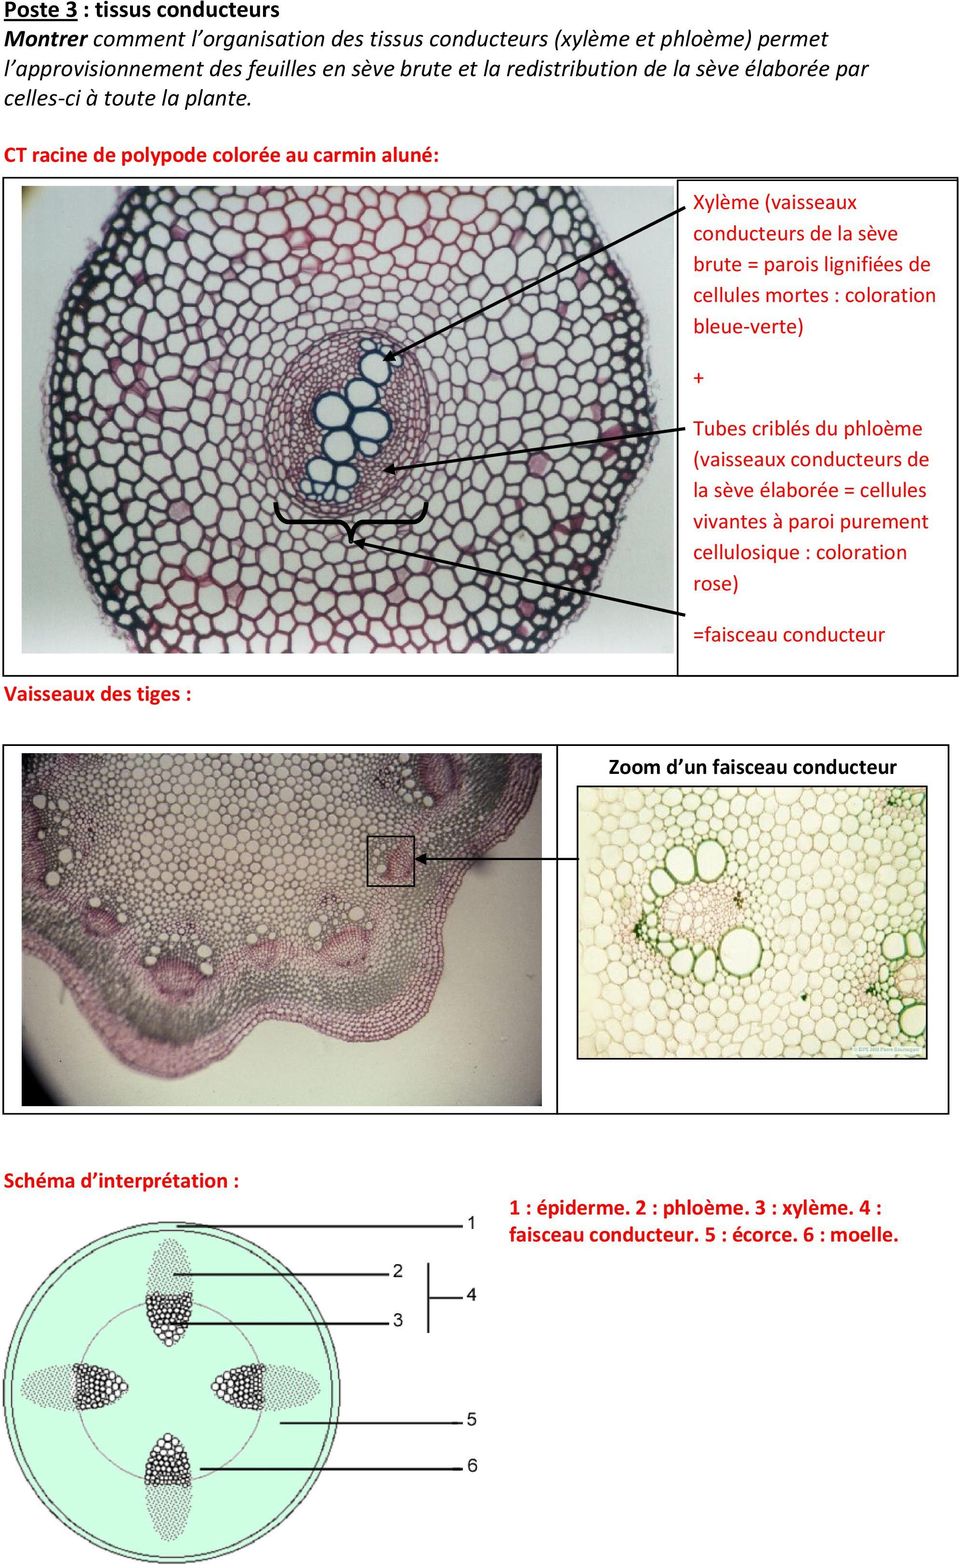 CT racine de polypode colorée au carmin aluné: Vaisseaux des tiges : Xylème (vaisseaux conducteurs de la sève brute = parois lignifiées de cellules mortes : coloration